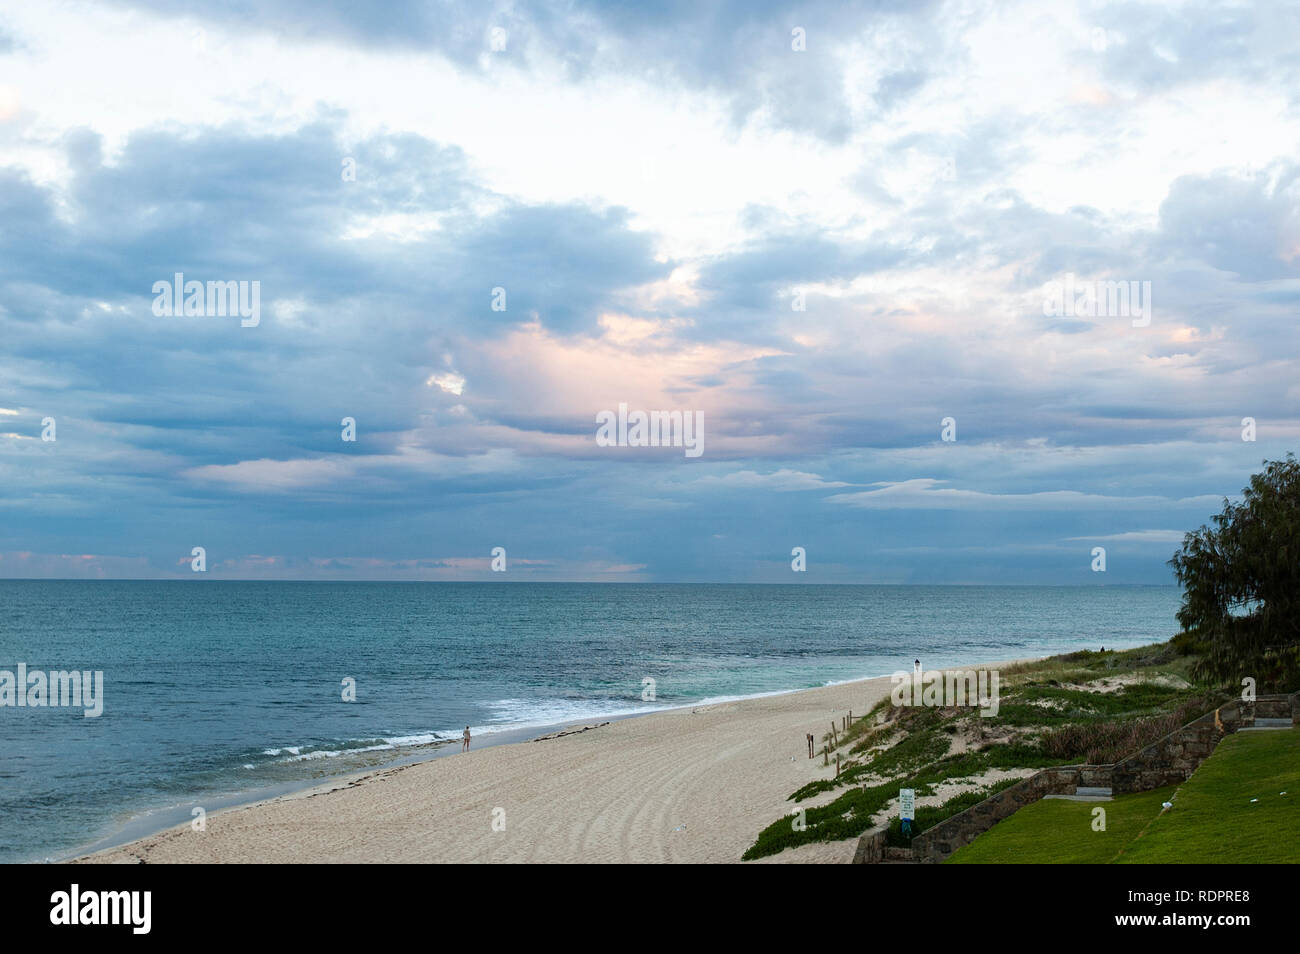 Am nördlichen Ende der Cottesloe Beach, Western Australia, Australien Stockfoto